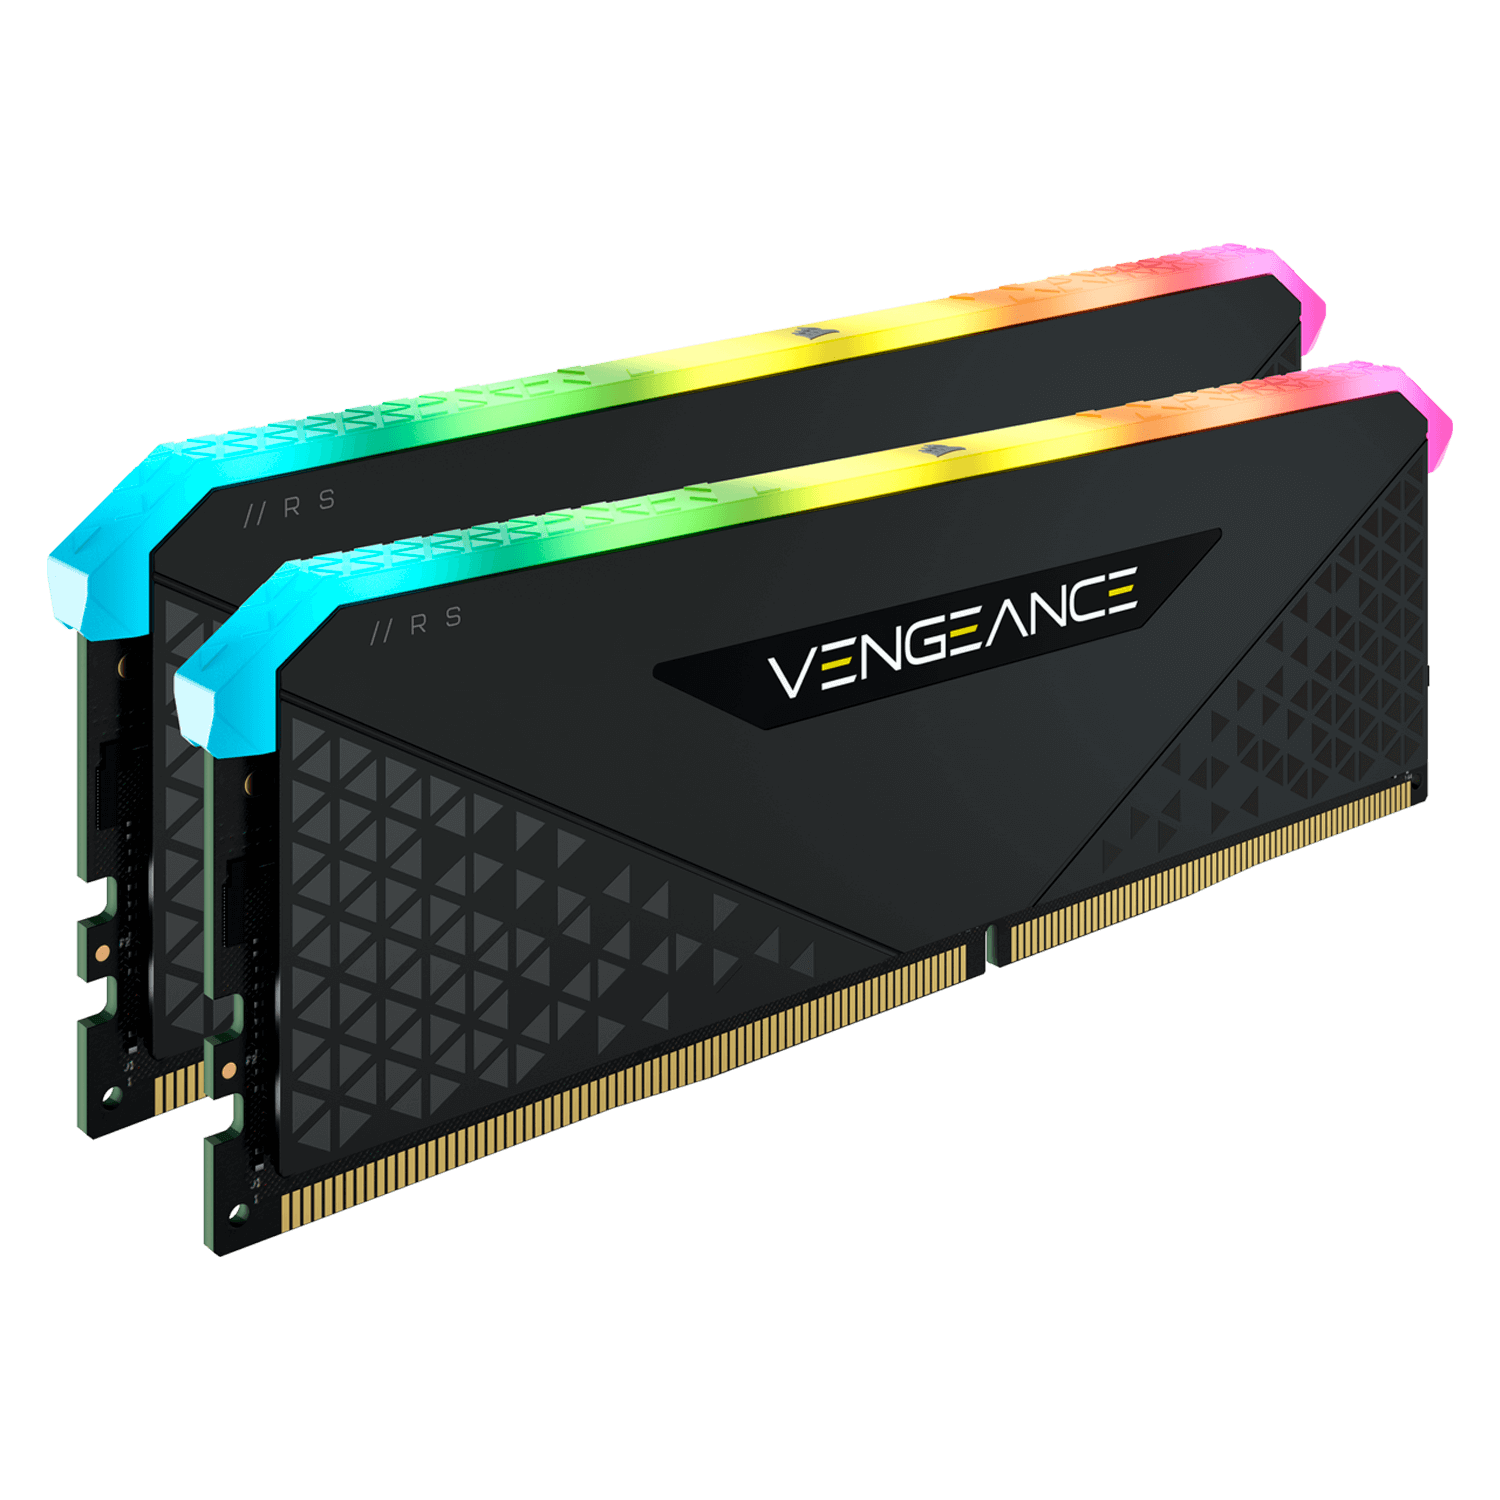 Memória RAM Corsair Vengeance RGB RS 32GB (2x16GB) DDR4 / 3600MHz - (CMG32GX4M2D3600C18)